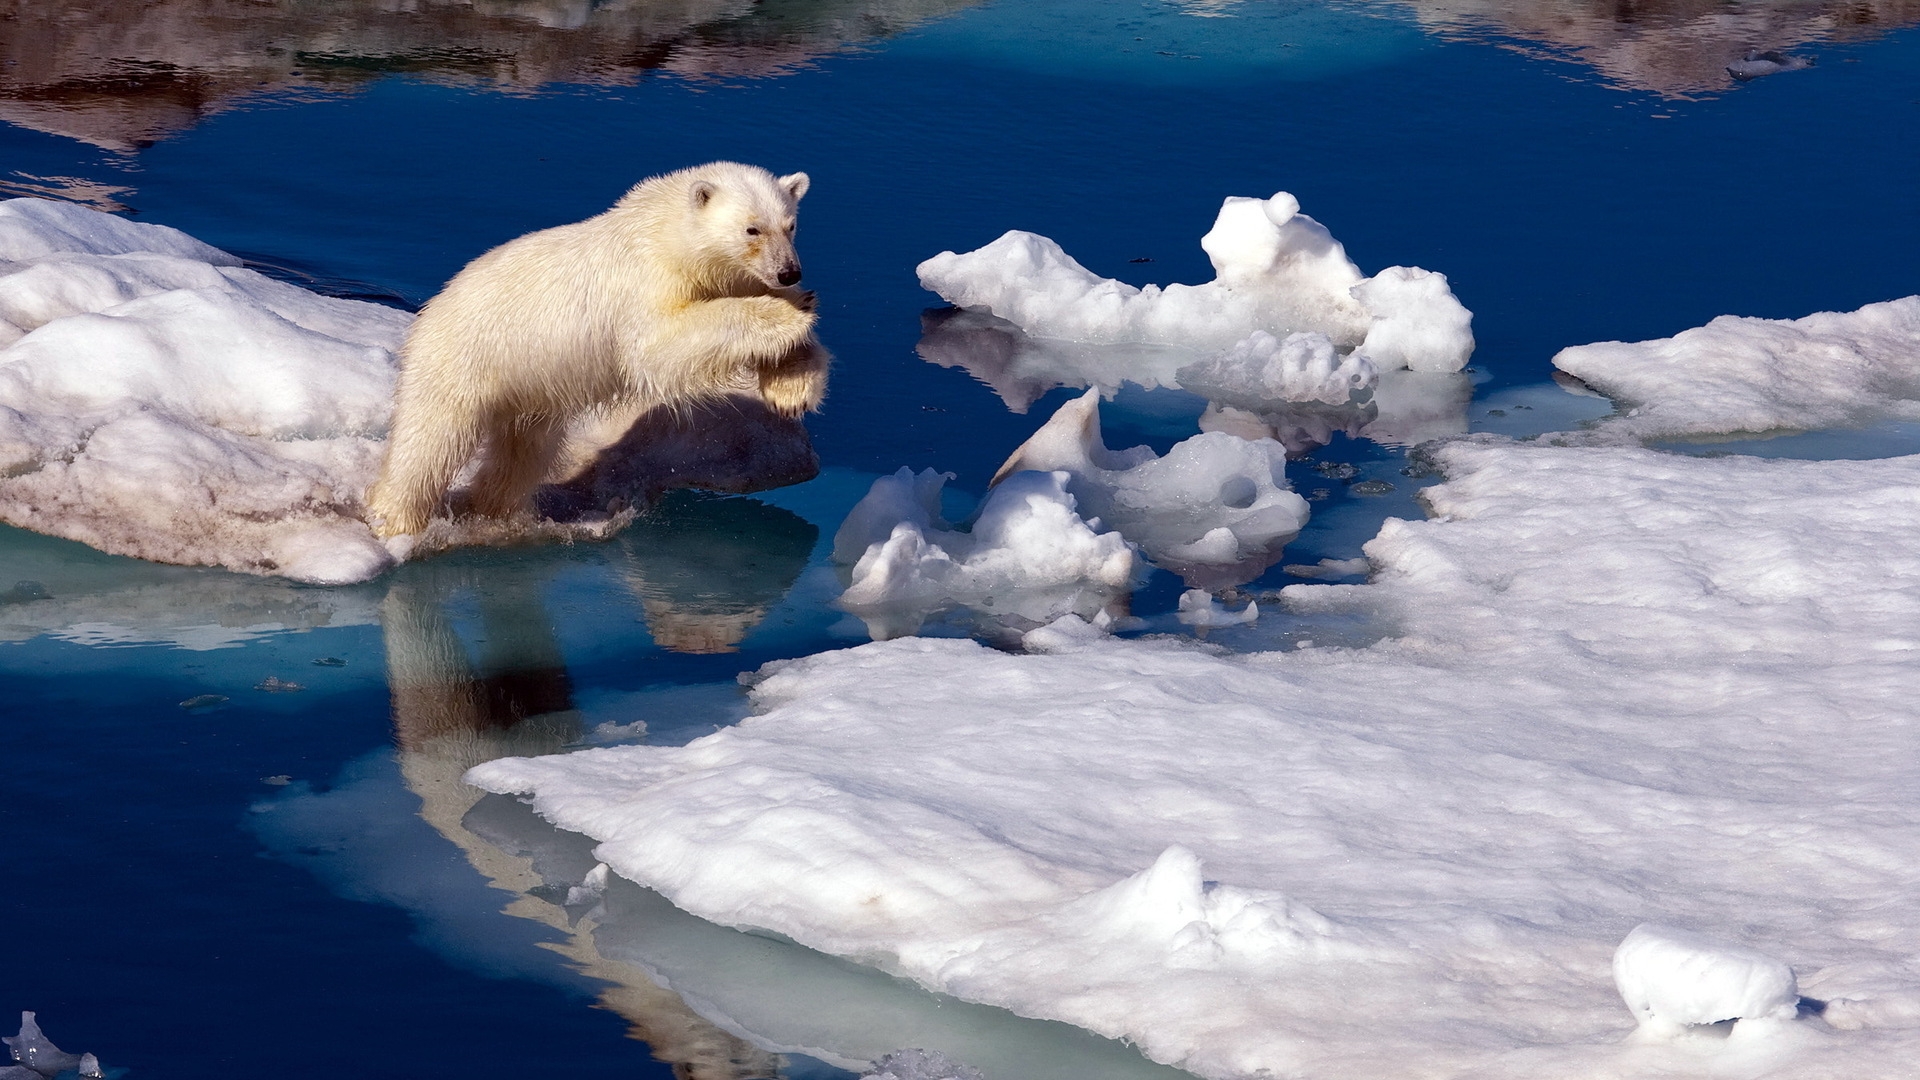 Brave Polar Bear for 1920 x 1080 HDTV 1080p resolution